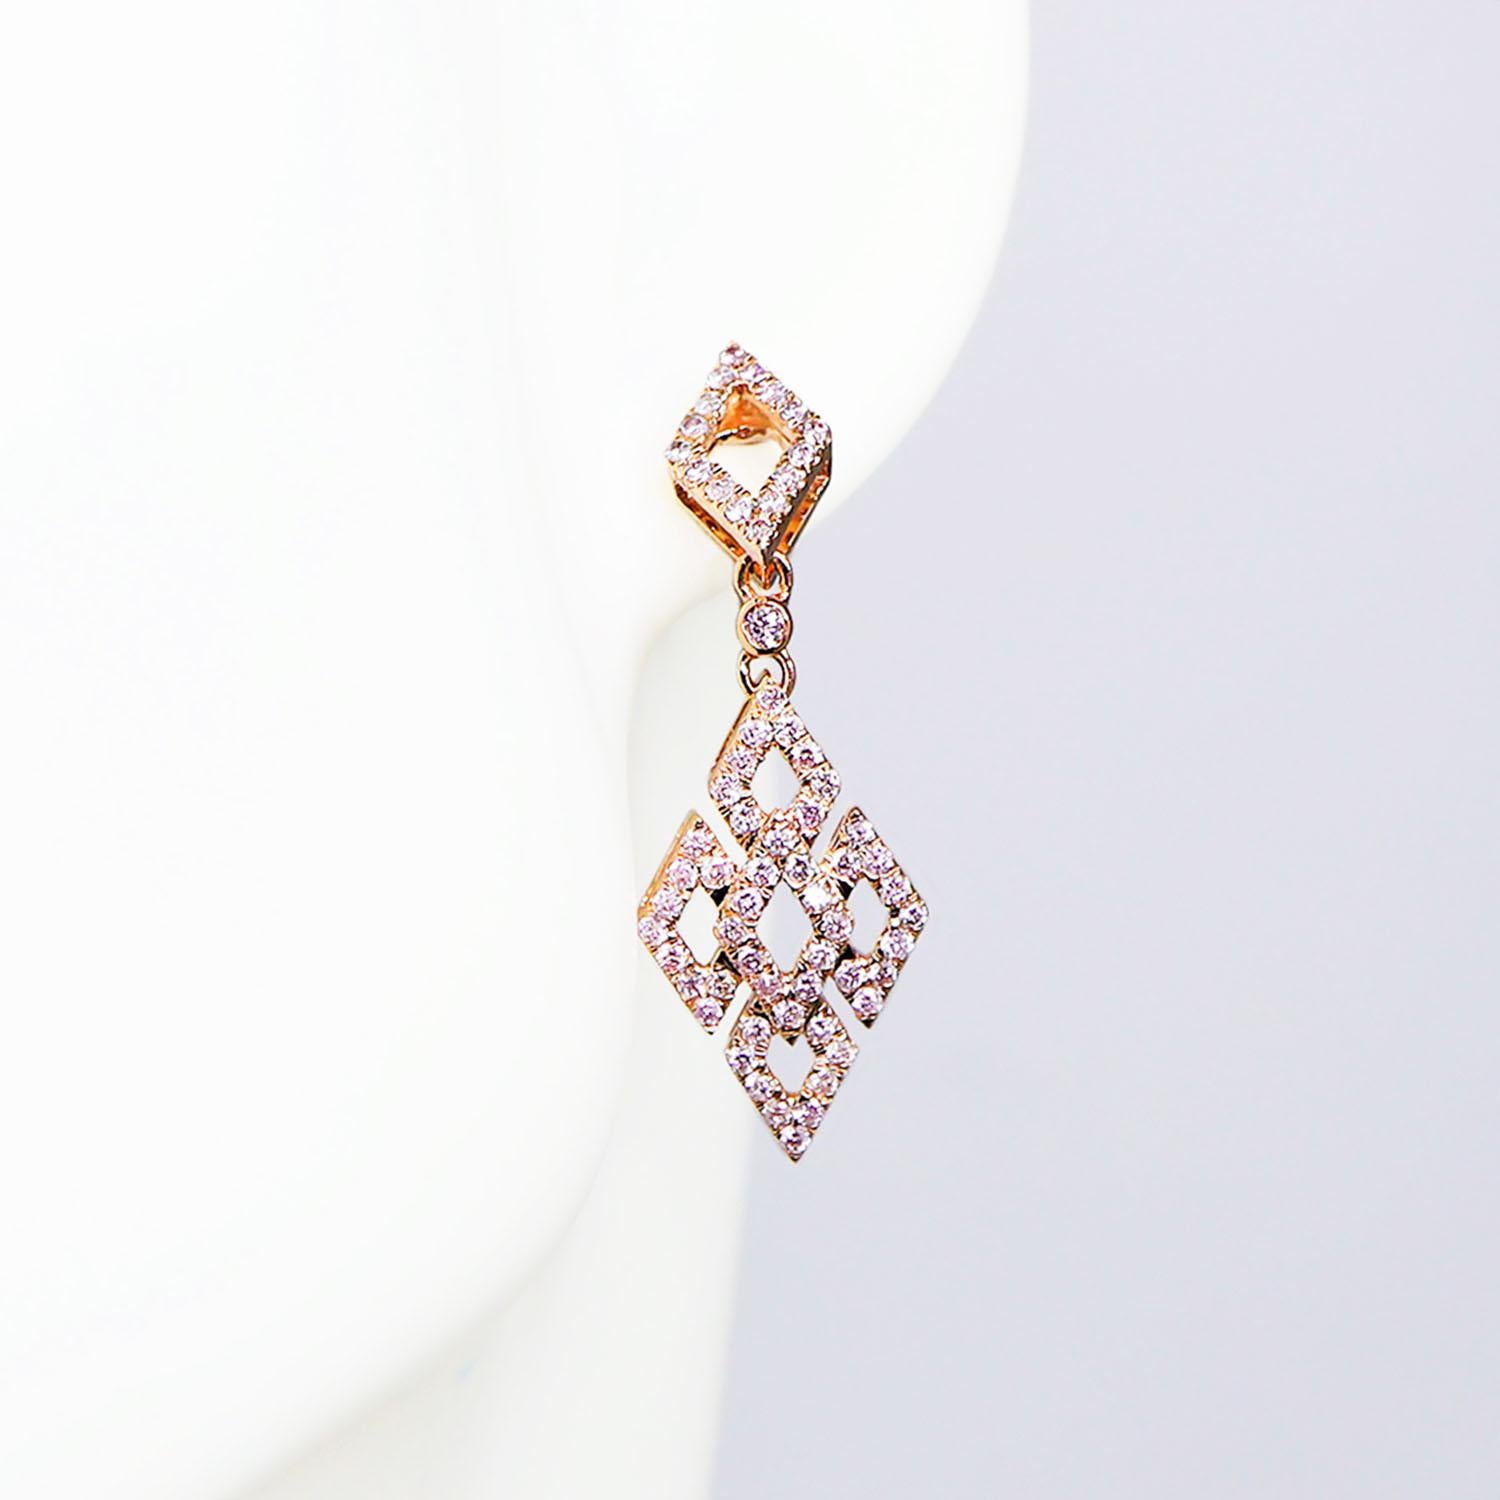 *IGI 14K 0.95 ct natürliche rosa Diamanten Art Deco Design Ohrstecker*

Dieses Band zeichnet sich durch ein atemberaubendes Design im Art-Déco-Stil aus, das aus 14 Karat Roségold gefertigt ist. Er ist mit natürlichen rosa Diamanten von 0.95 Karat